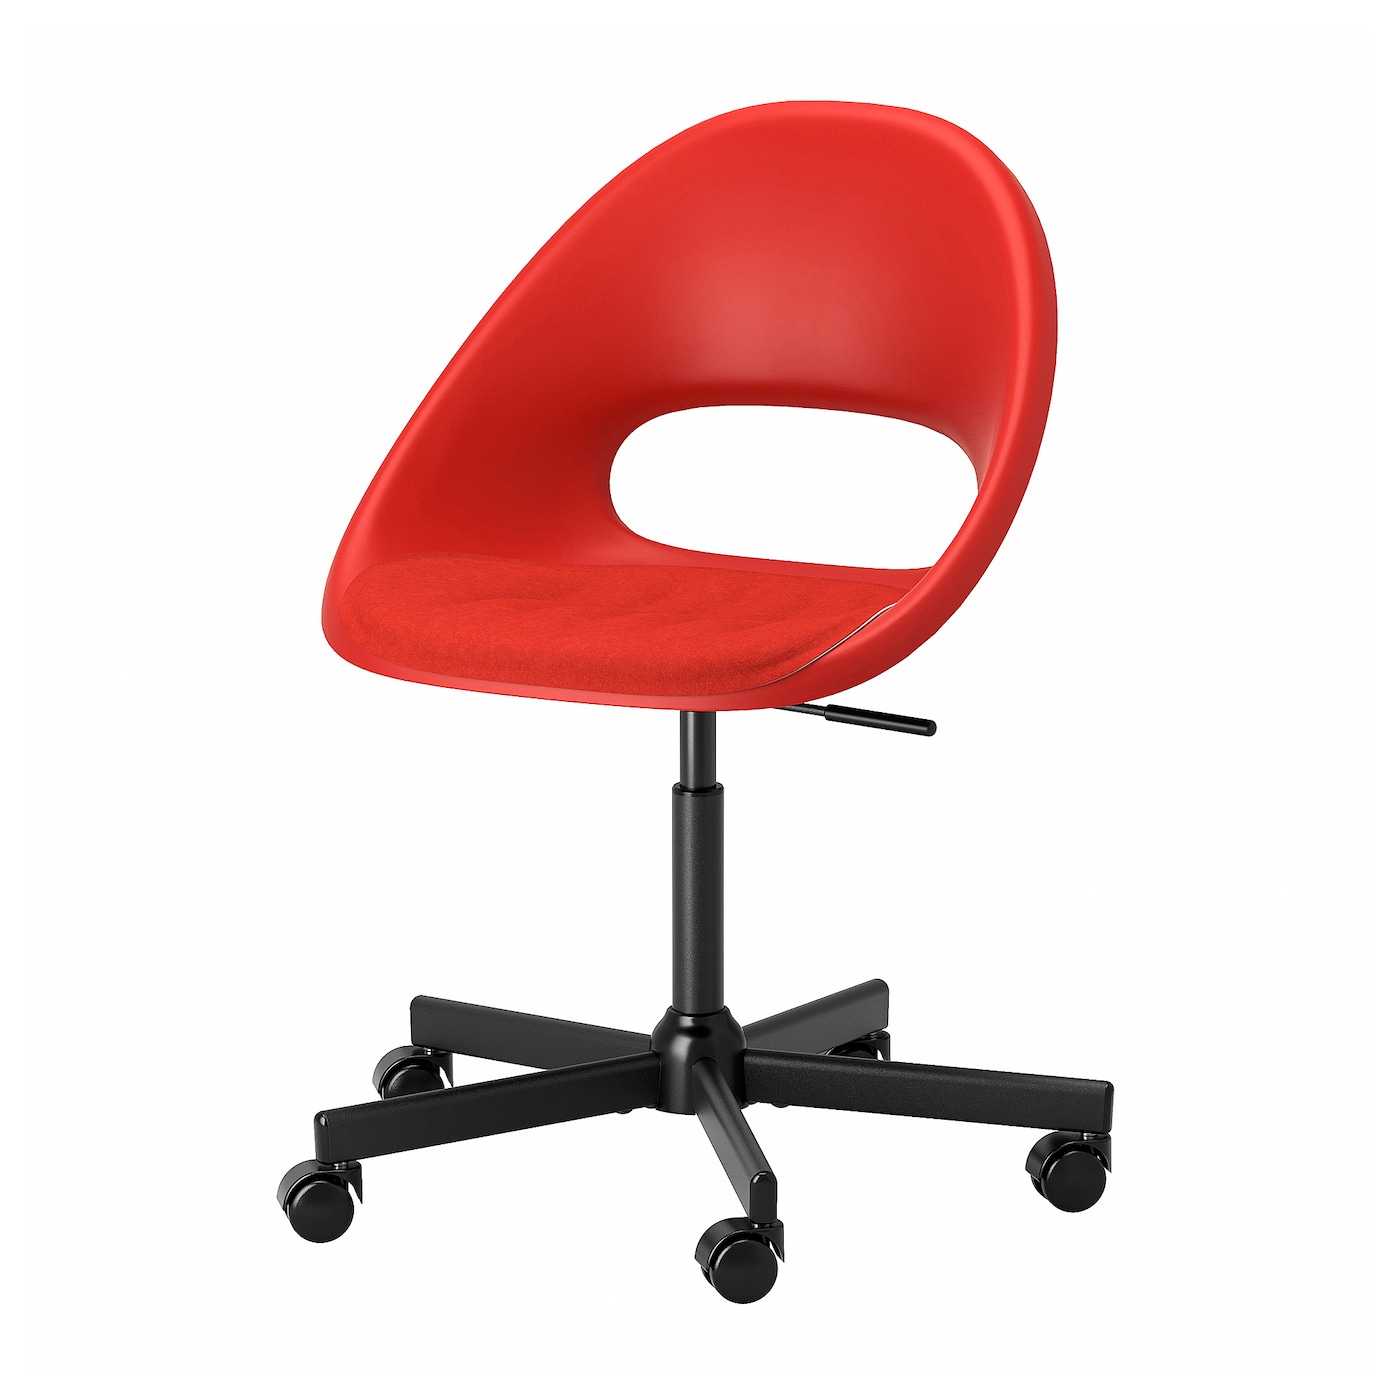 ELDBERGET / MALSKäR - krzesło obrotowe tapicerowane czerwony/czarny